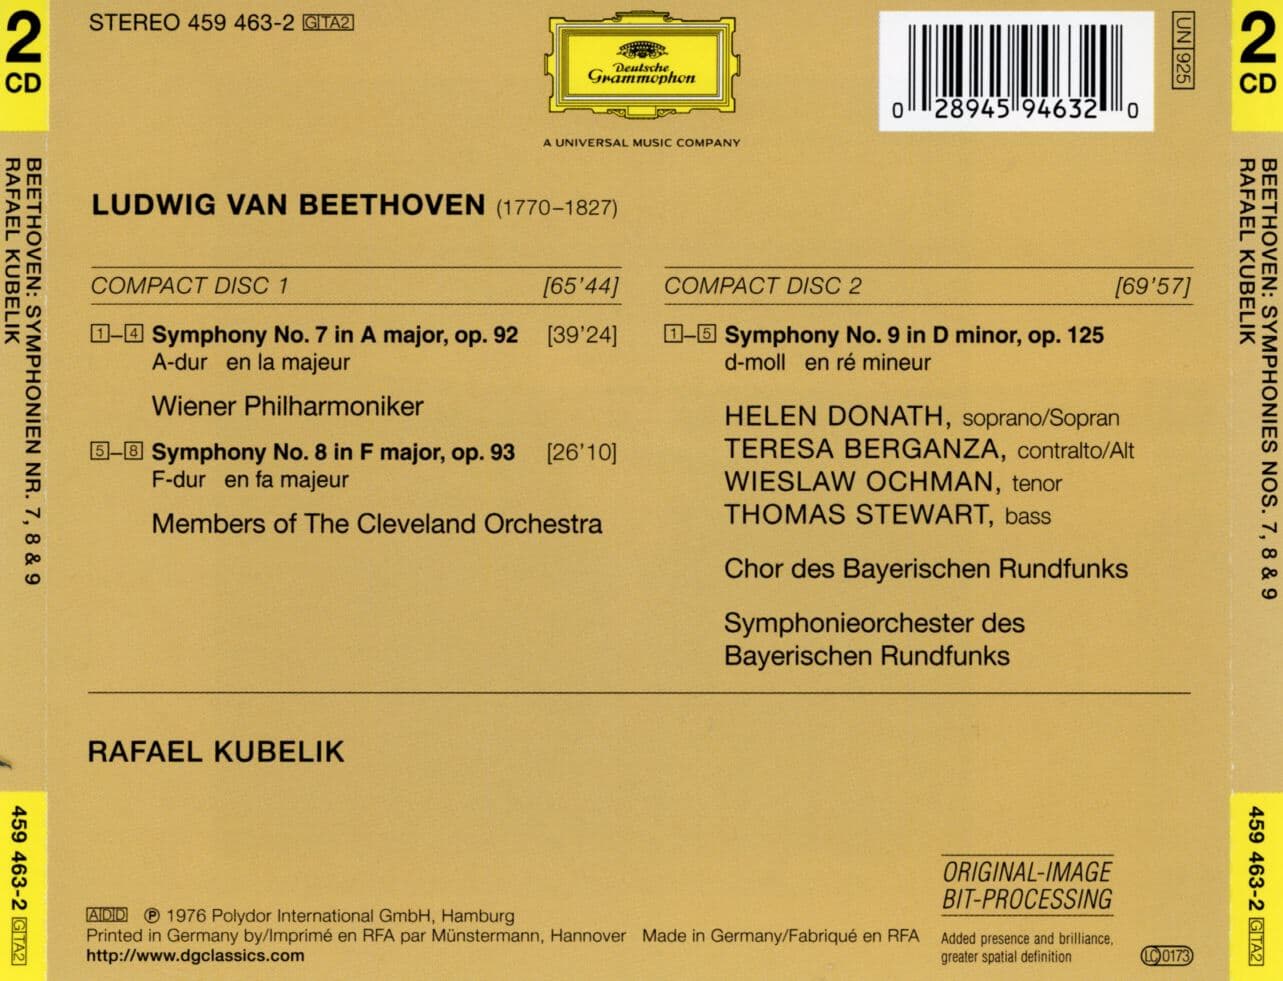 라파엘 쿠벨릭 - Rafael Kubelik - Beethoven Symphonies Nos.7,8,9 2Cds [독일발매]